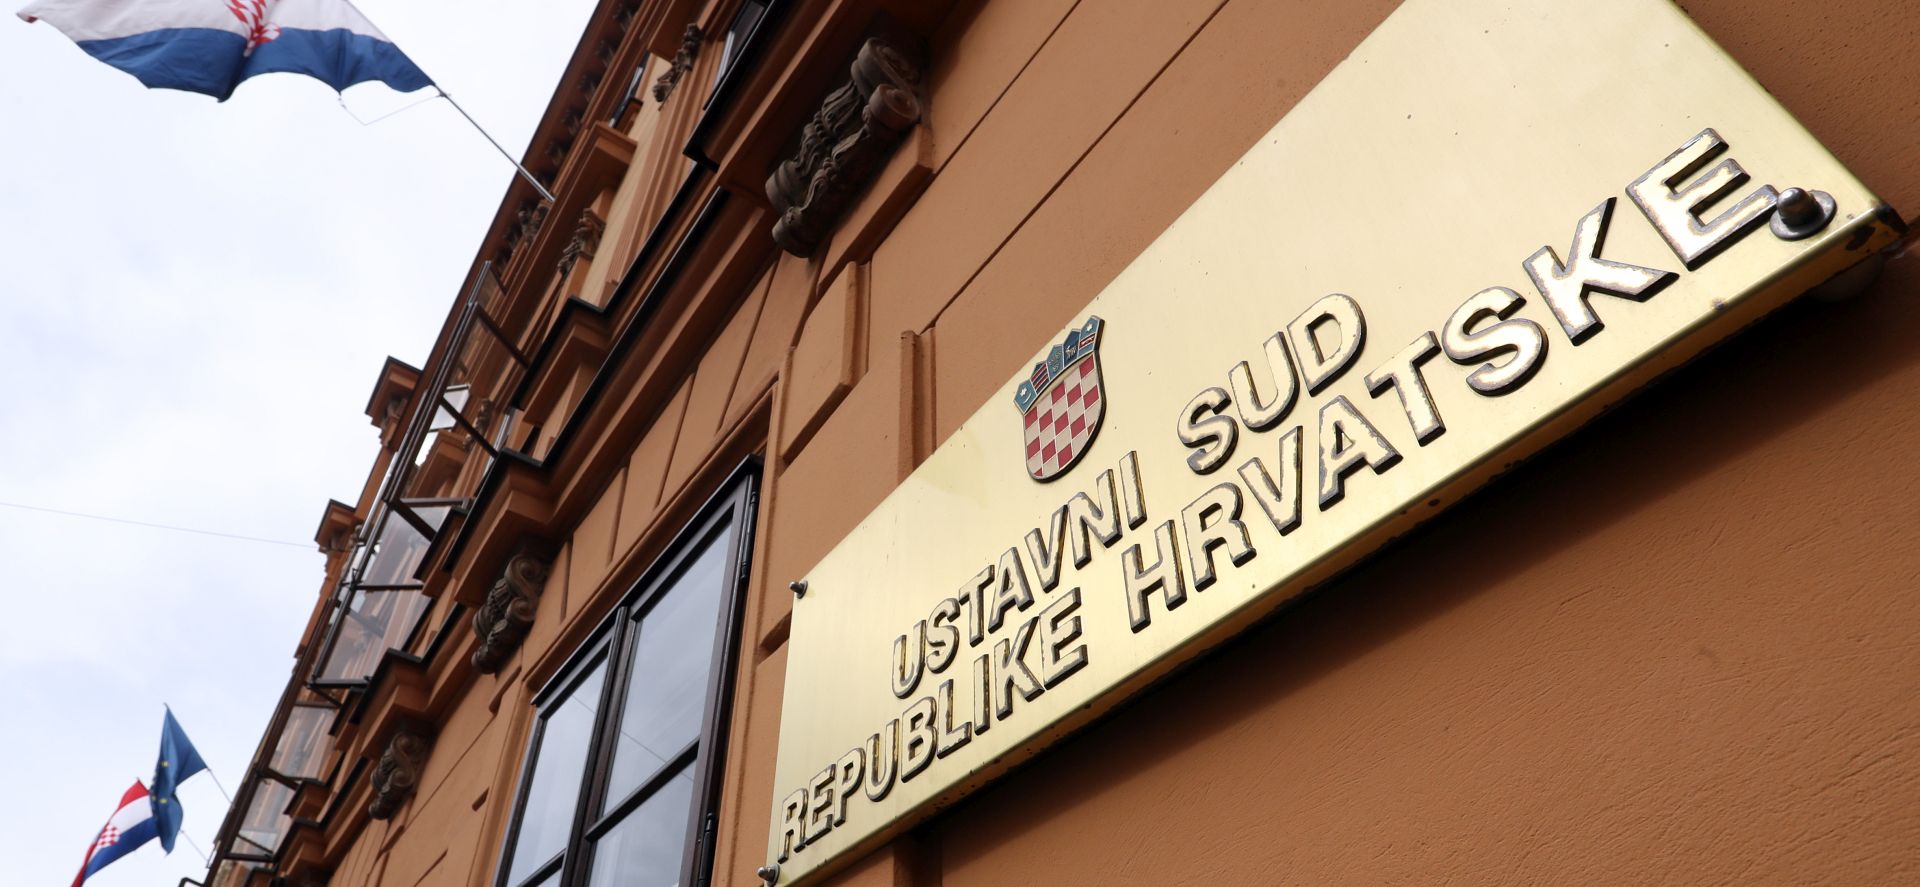 USTAVNI SUD Odbačeni prijedlozi za ocjenu ustavnosti zakona o švicarcu i o lokalnim izborima